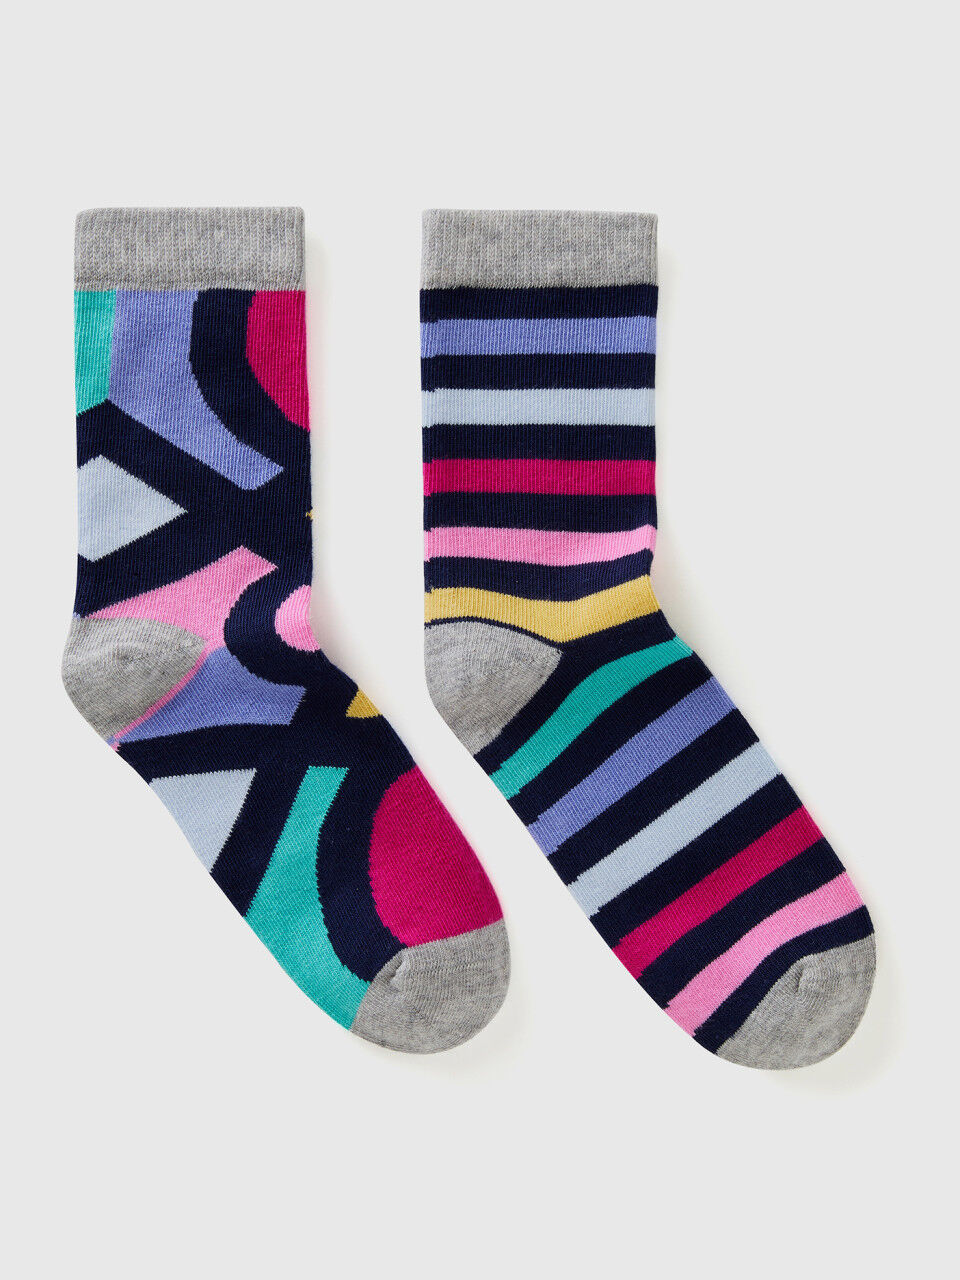 Mix & match patterned socks